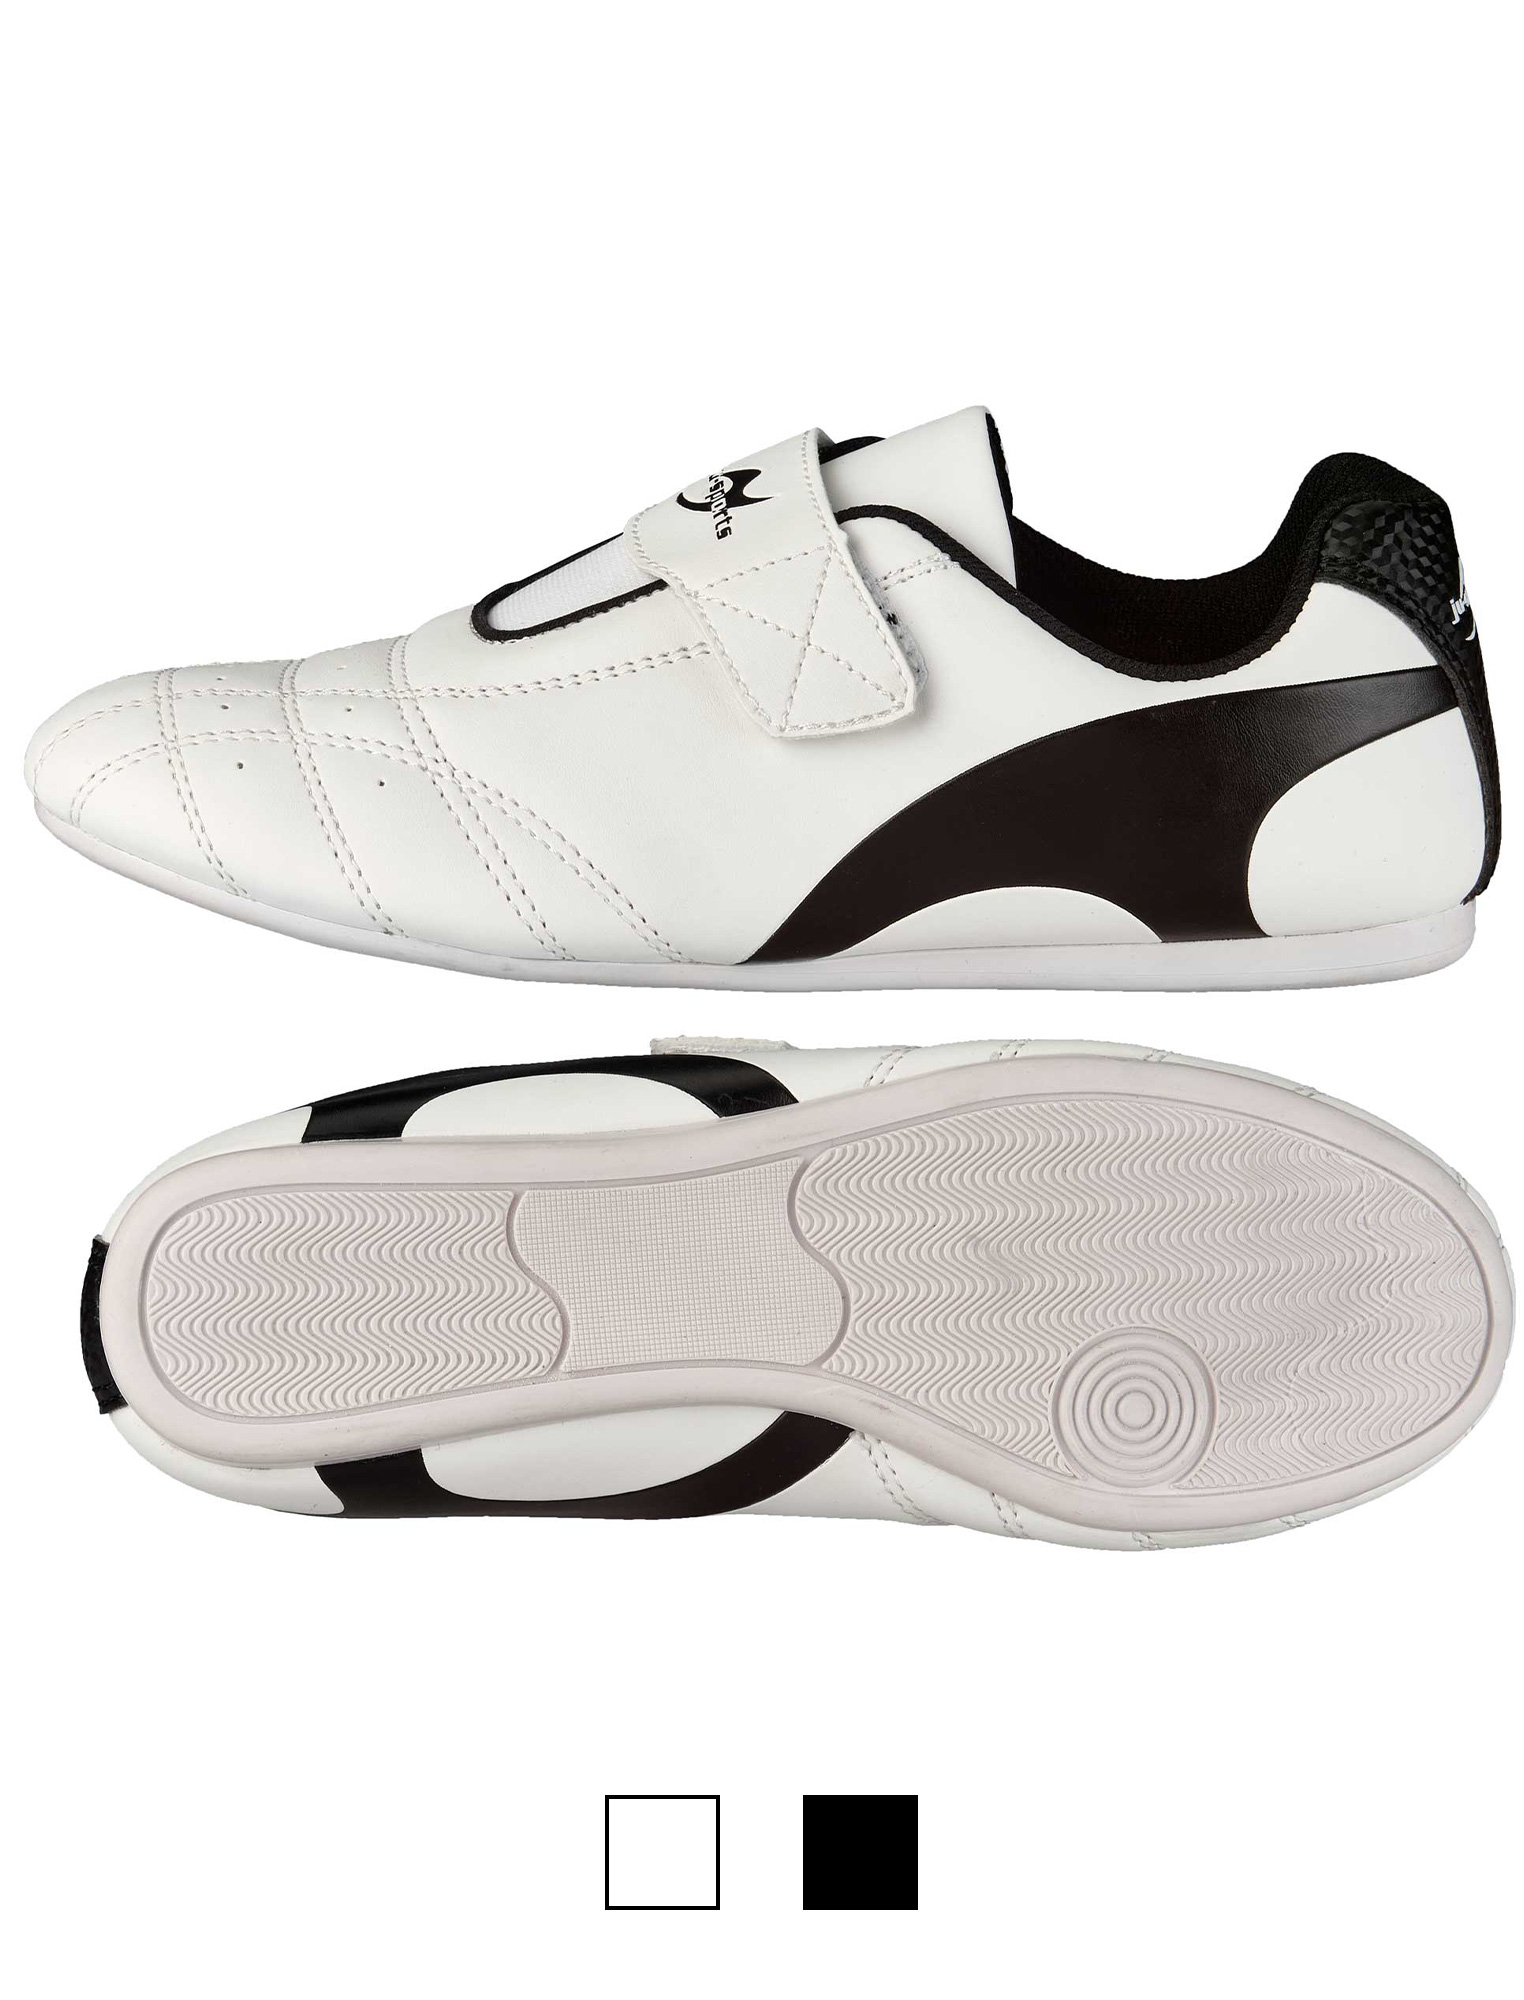 Taekwondo Footwear Korea C2 white